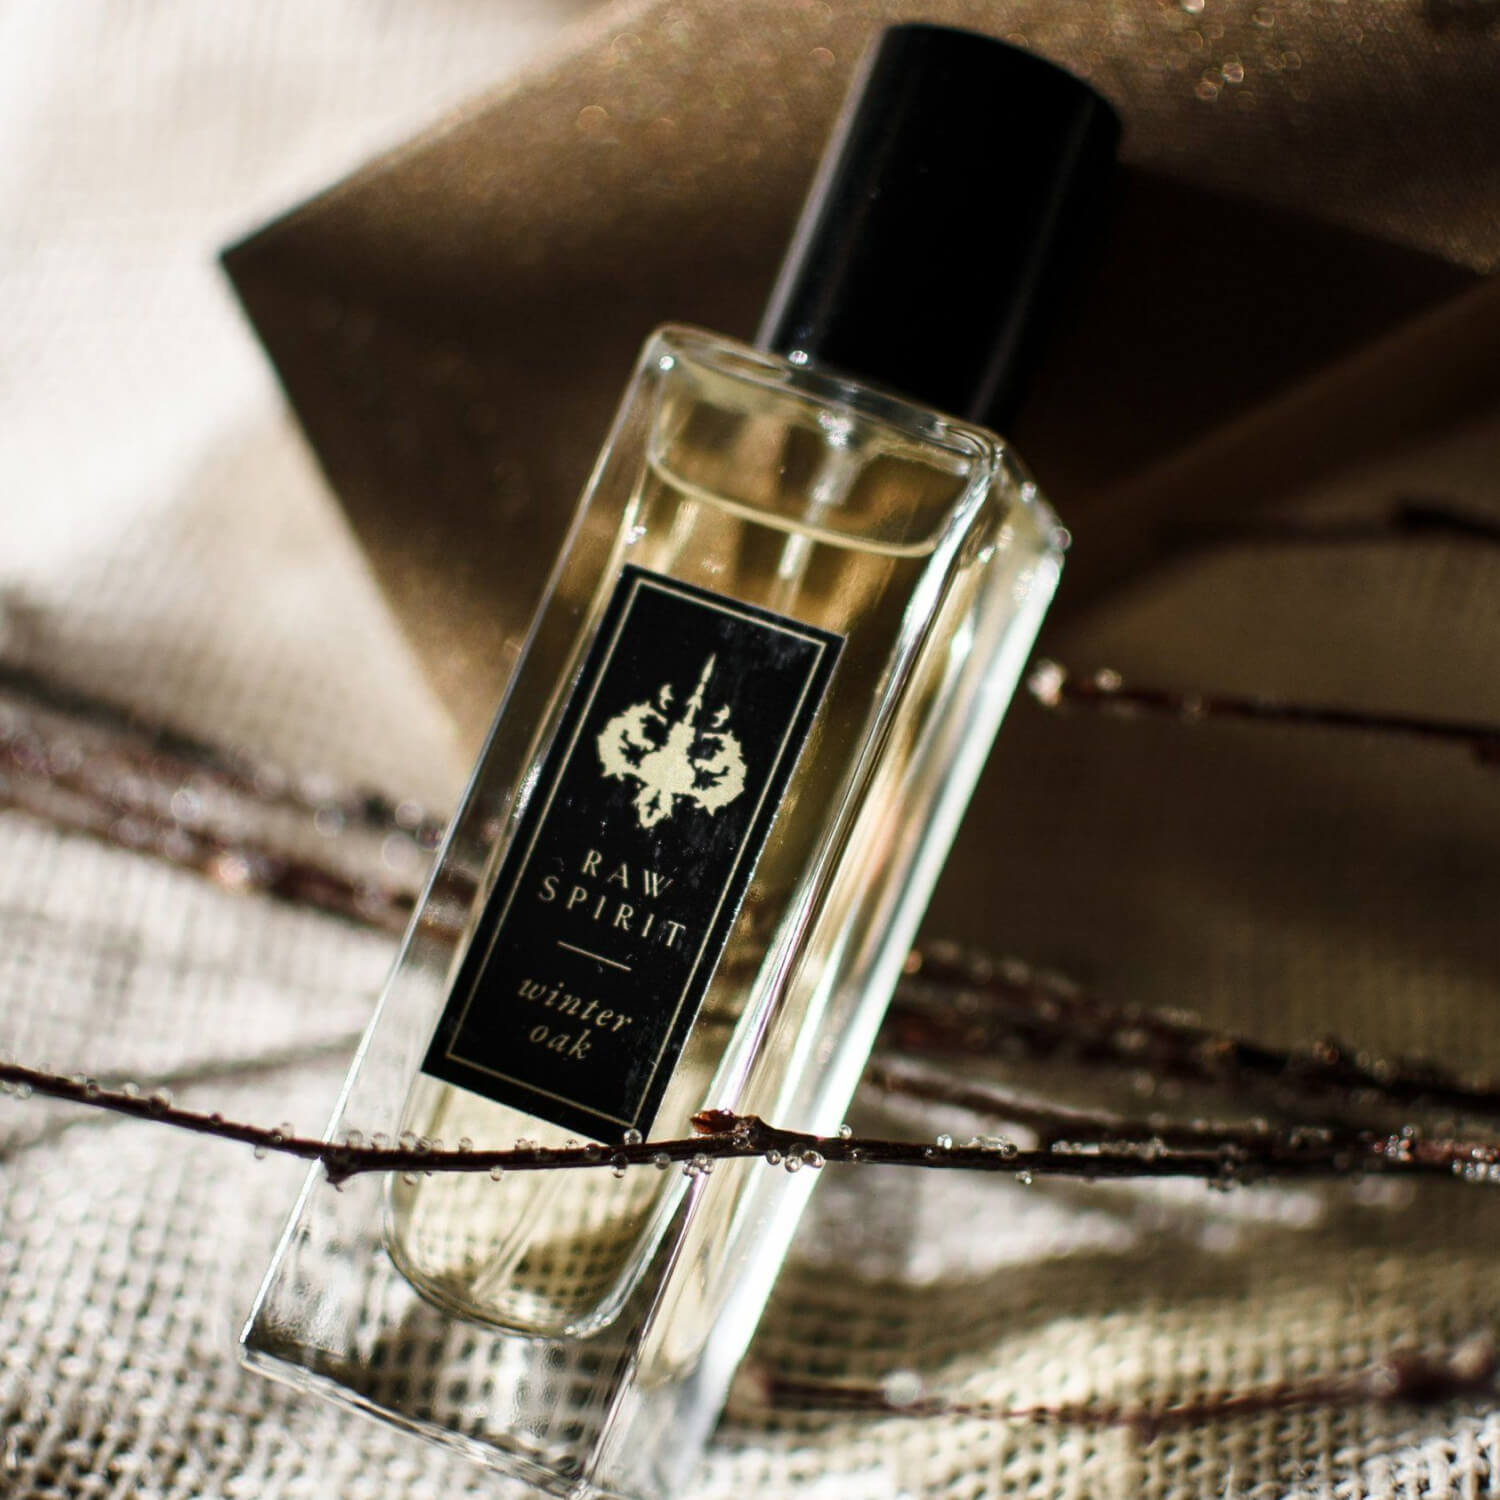 Crystal-Infused Perfume Oils — Earth Spirit